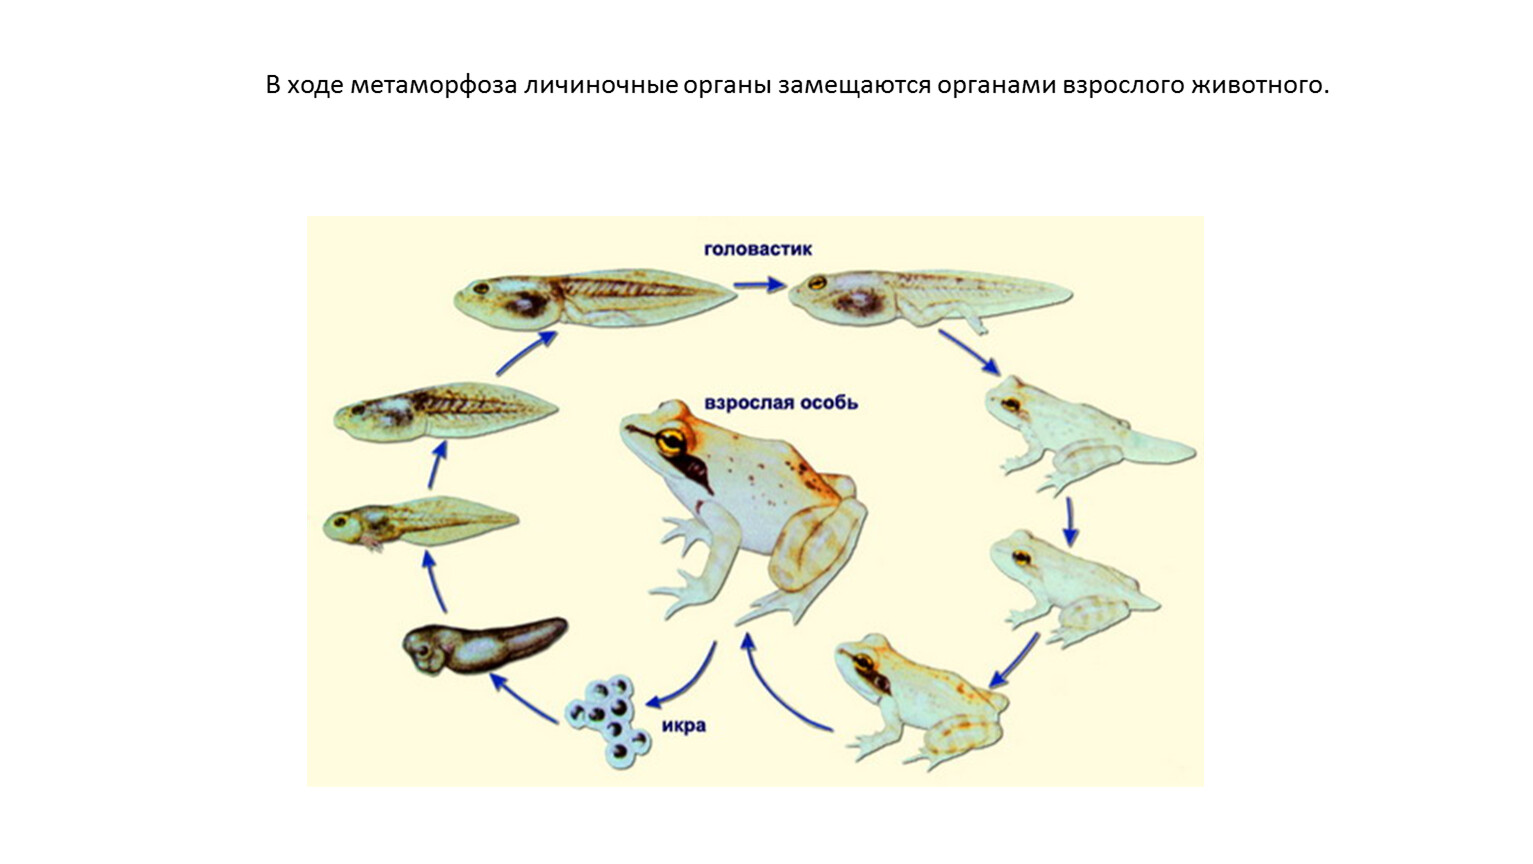 Изменения организма в течении жизни это. Биологическое значение Метаморфоза. Личиночное развитие земноводных разных отрядов. Развитие пингвина с метаморфозом. Качественное изменение организмов в течение жизни это.